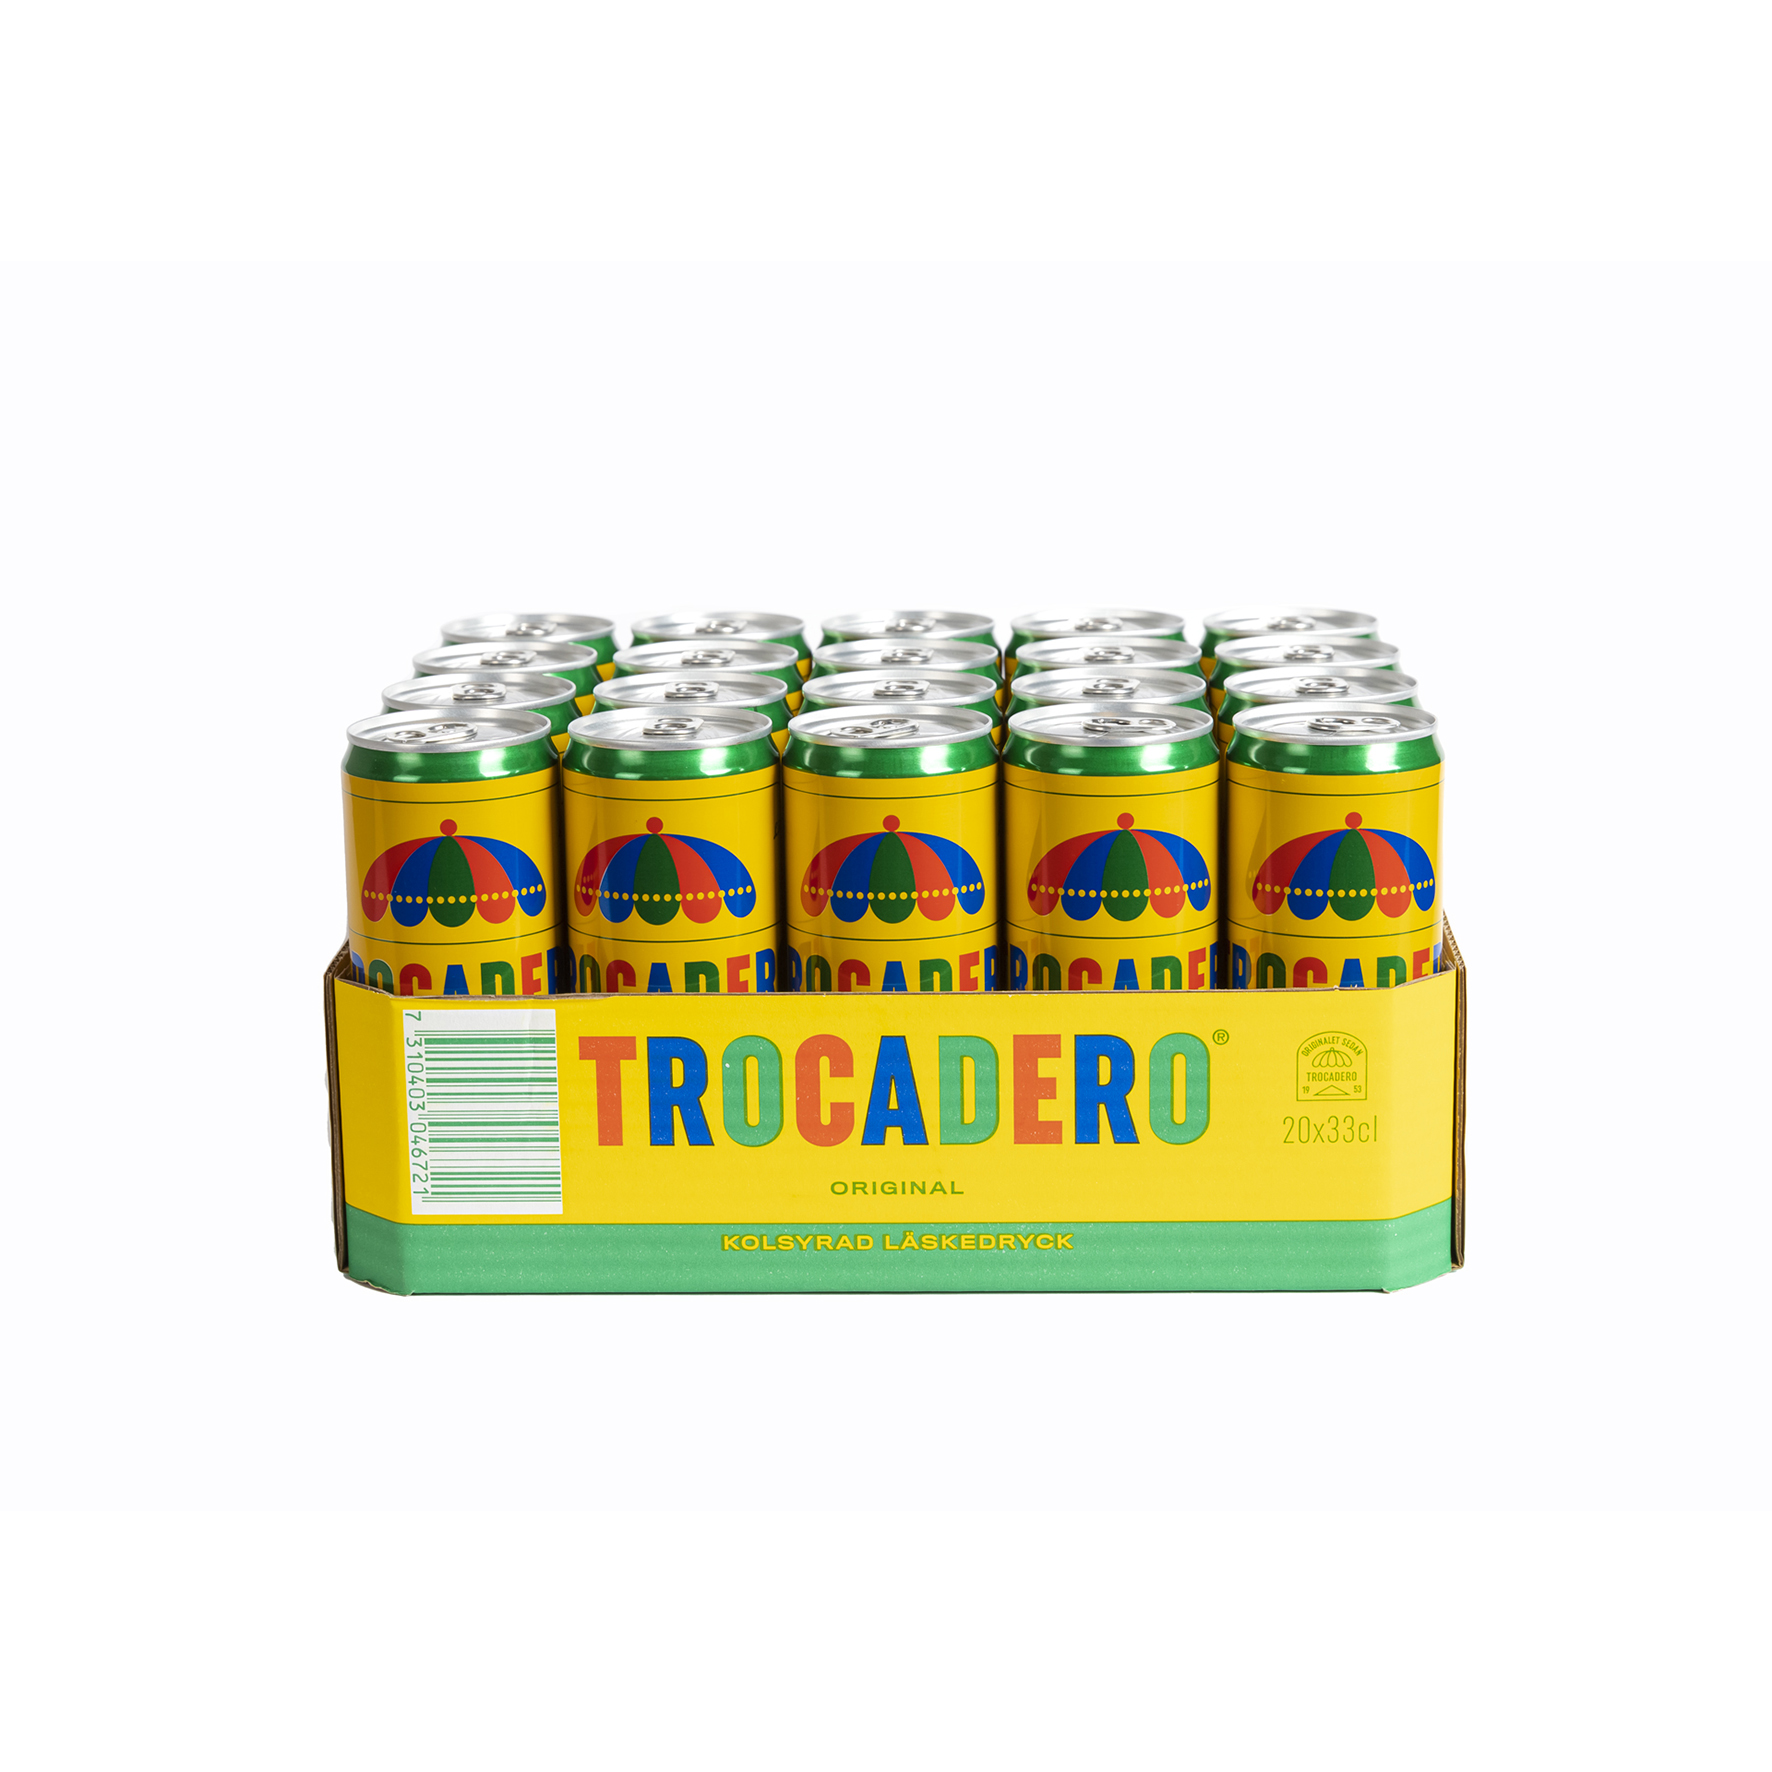 [8560082] Trocadero 33cl sleek can